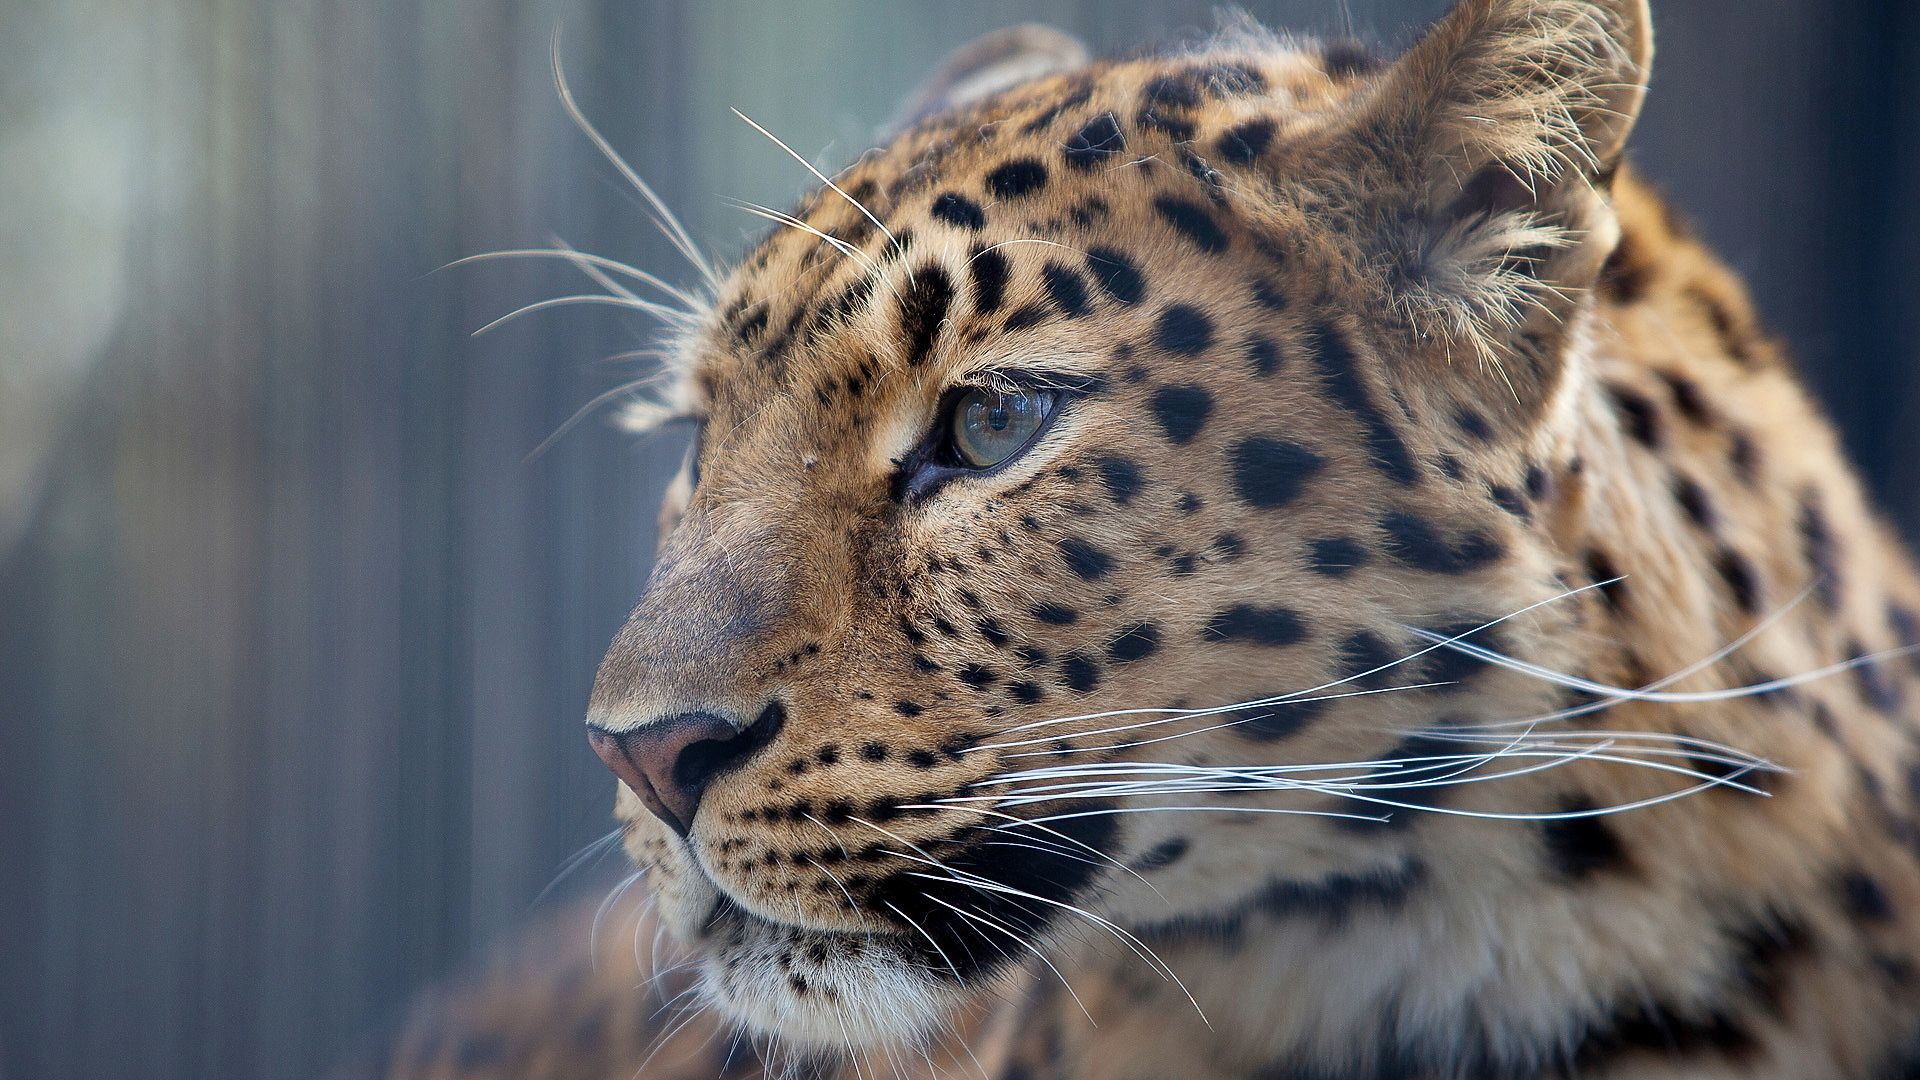 Fondos de pantalla Leopardos Gatos grandes Animales 1920x1080